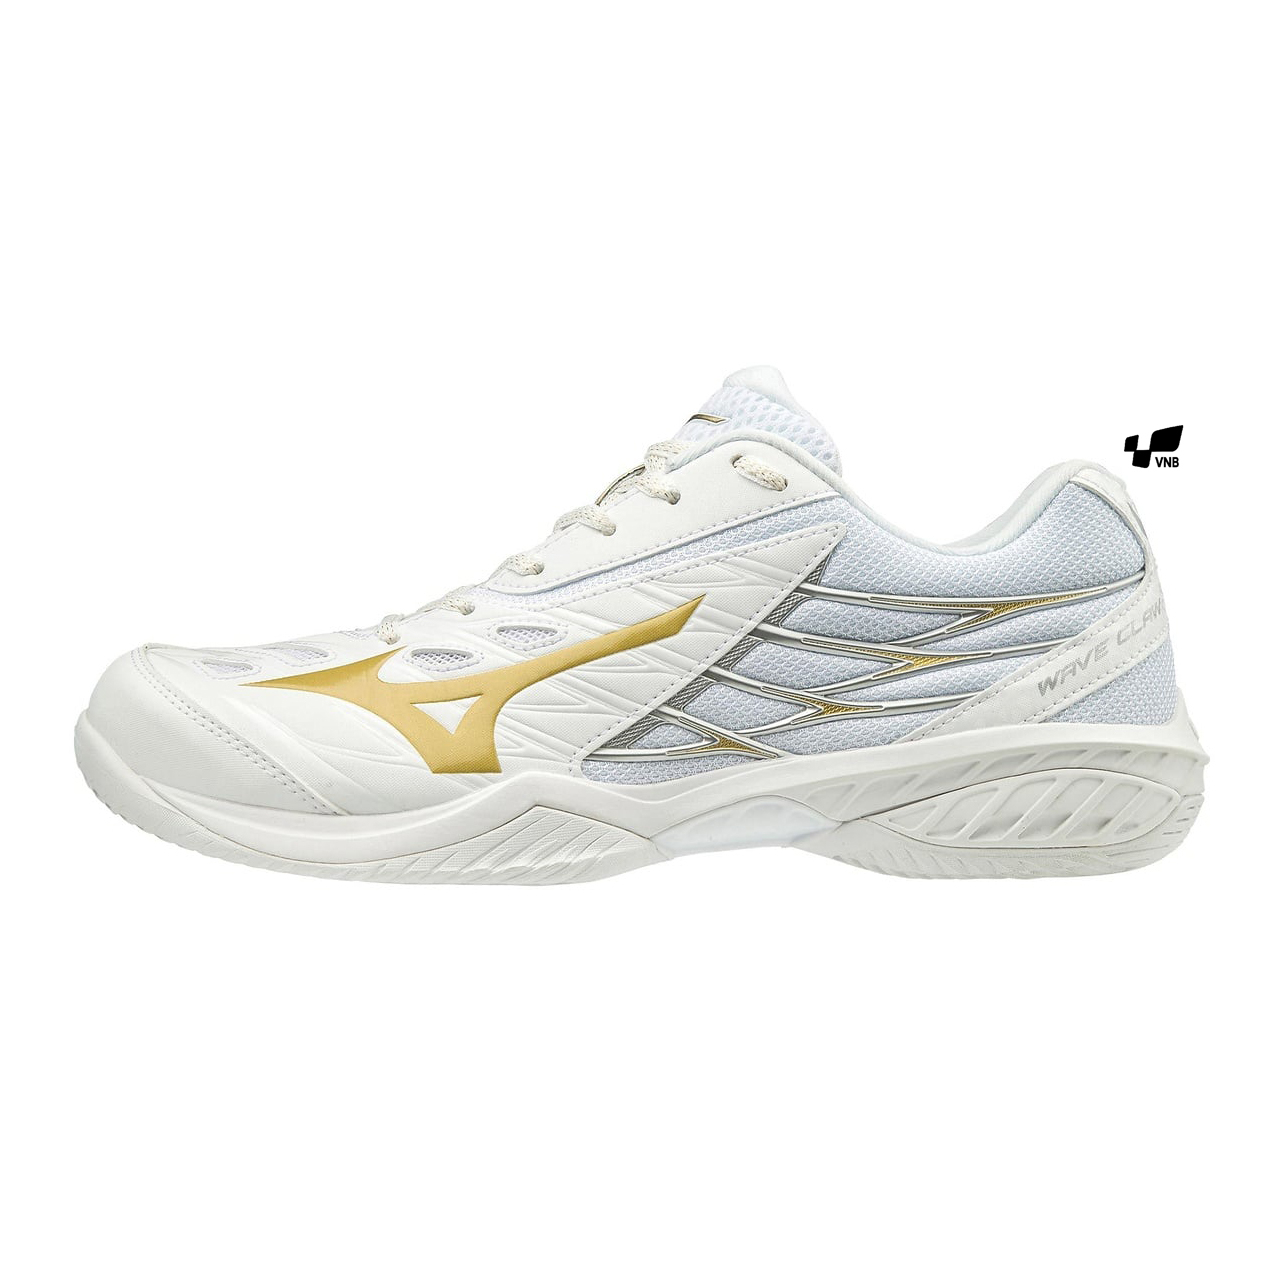 Giày cầu lông Mizuno Wave Claw - Trắng vàng (Mã JP)